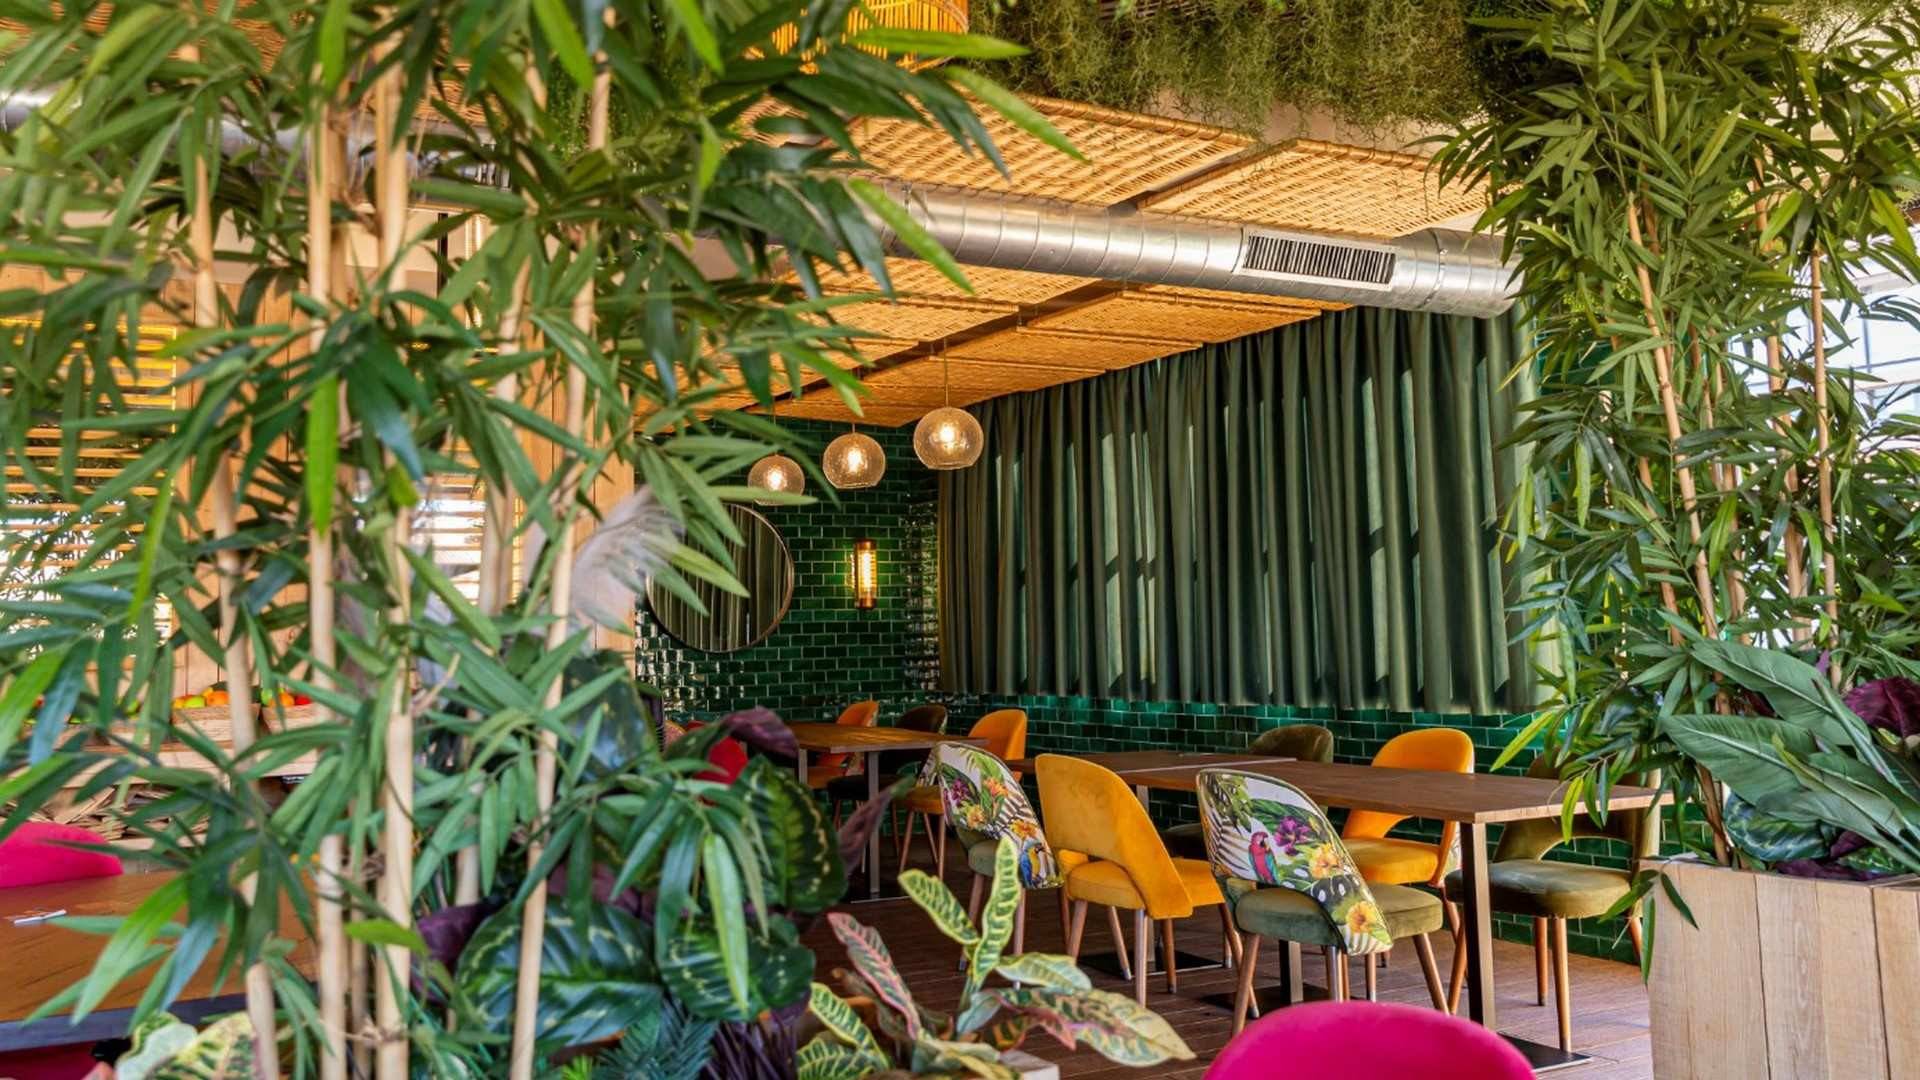 El restaurante Martilota cuenta con más de mil metros cuadrados, repartidos en dos amplias plantas con varios ambientes